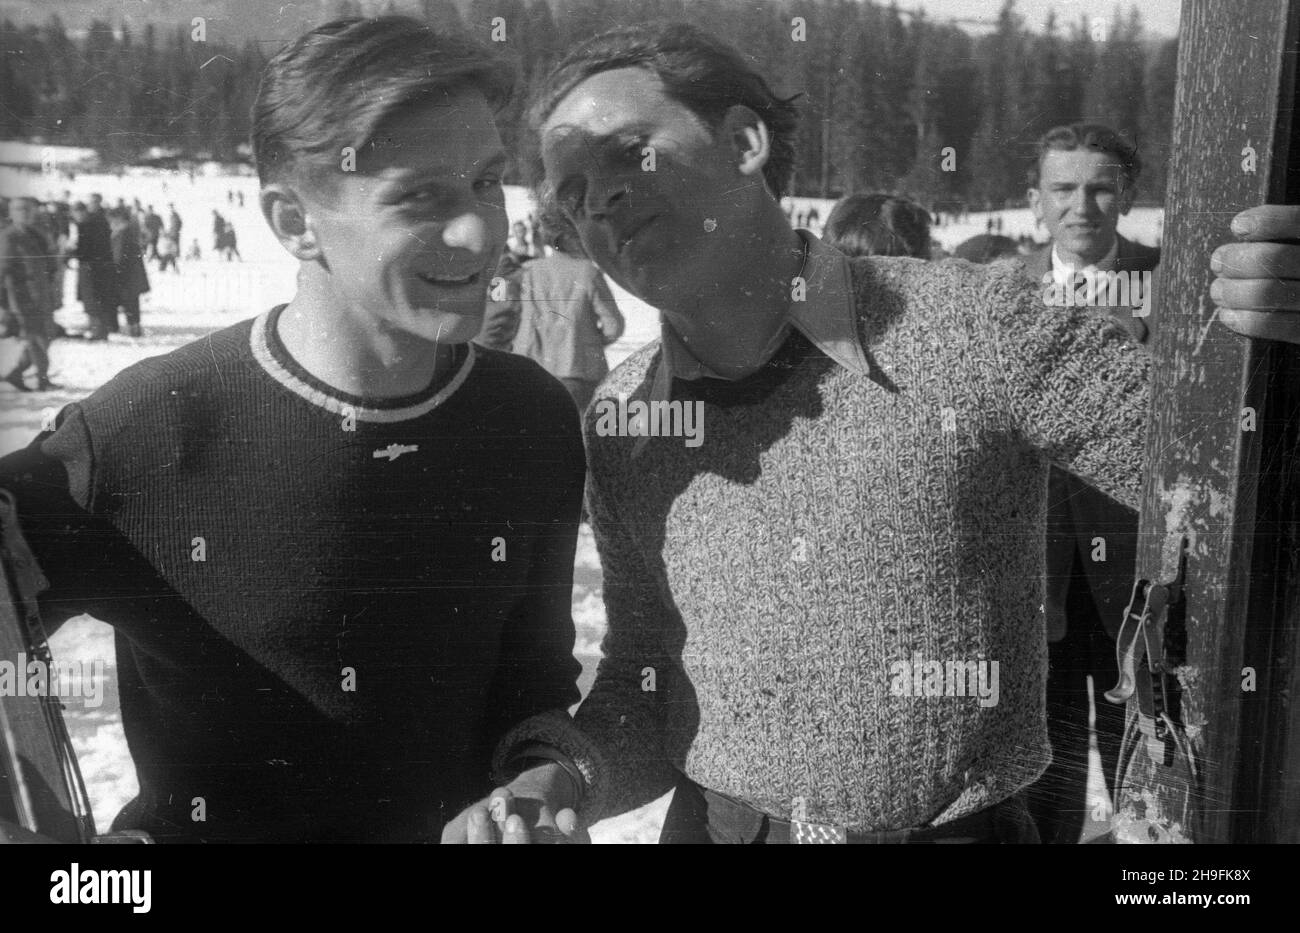 Karpacz, 1948-02-22. W dniach 19-23 lutego odbywa³y siê XXIII Mistrzostwa Narciarskie Polski. Zawody w skokach narciarskich rozegrano na skoczni Orlinek. Wygra³ je Stanis³aw Marusarz. pw  PAP    Karpacz, Feb. 22, 1948. The 23rd Poland's Skiing Championship was held on February 19-23. Stanislaw Marusarz won a ski jumping competition which was held at the Orlinek ski jump.   pw  PAP Stock Photo